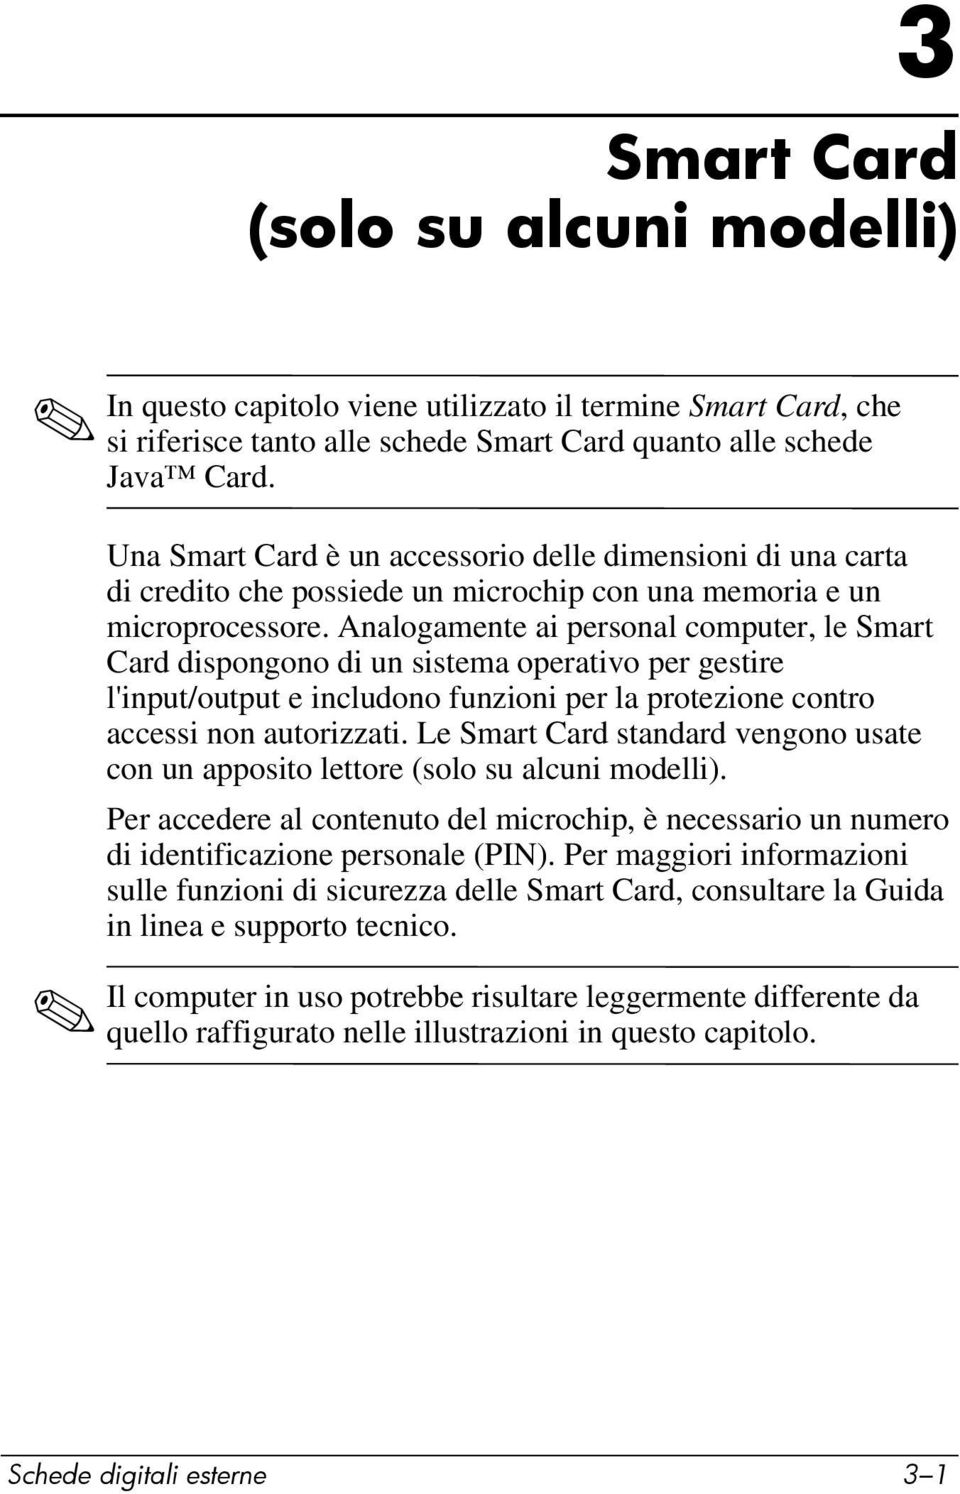 Analogamente ai personal computer, le Smart Card dispongono di un sistema operativo per gestire l'input/output e includono funzioni per la protezione contro accessi non autorizzati.